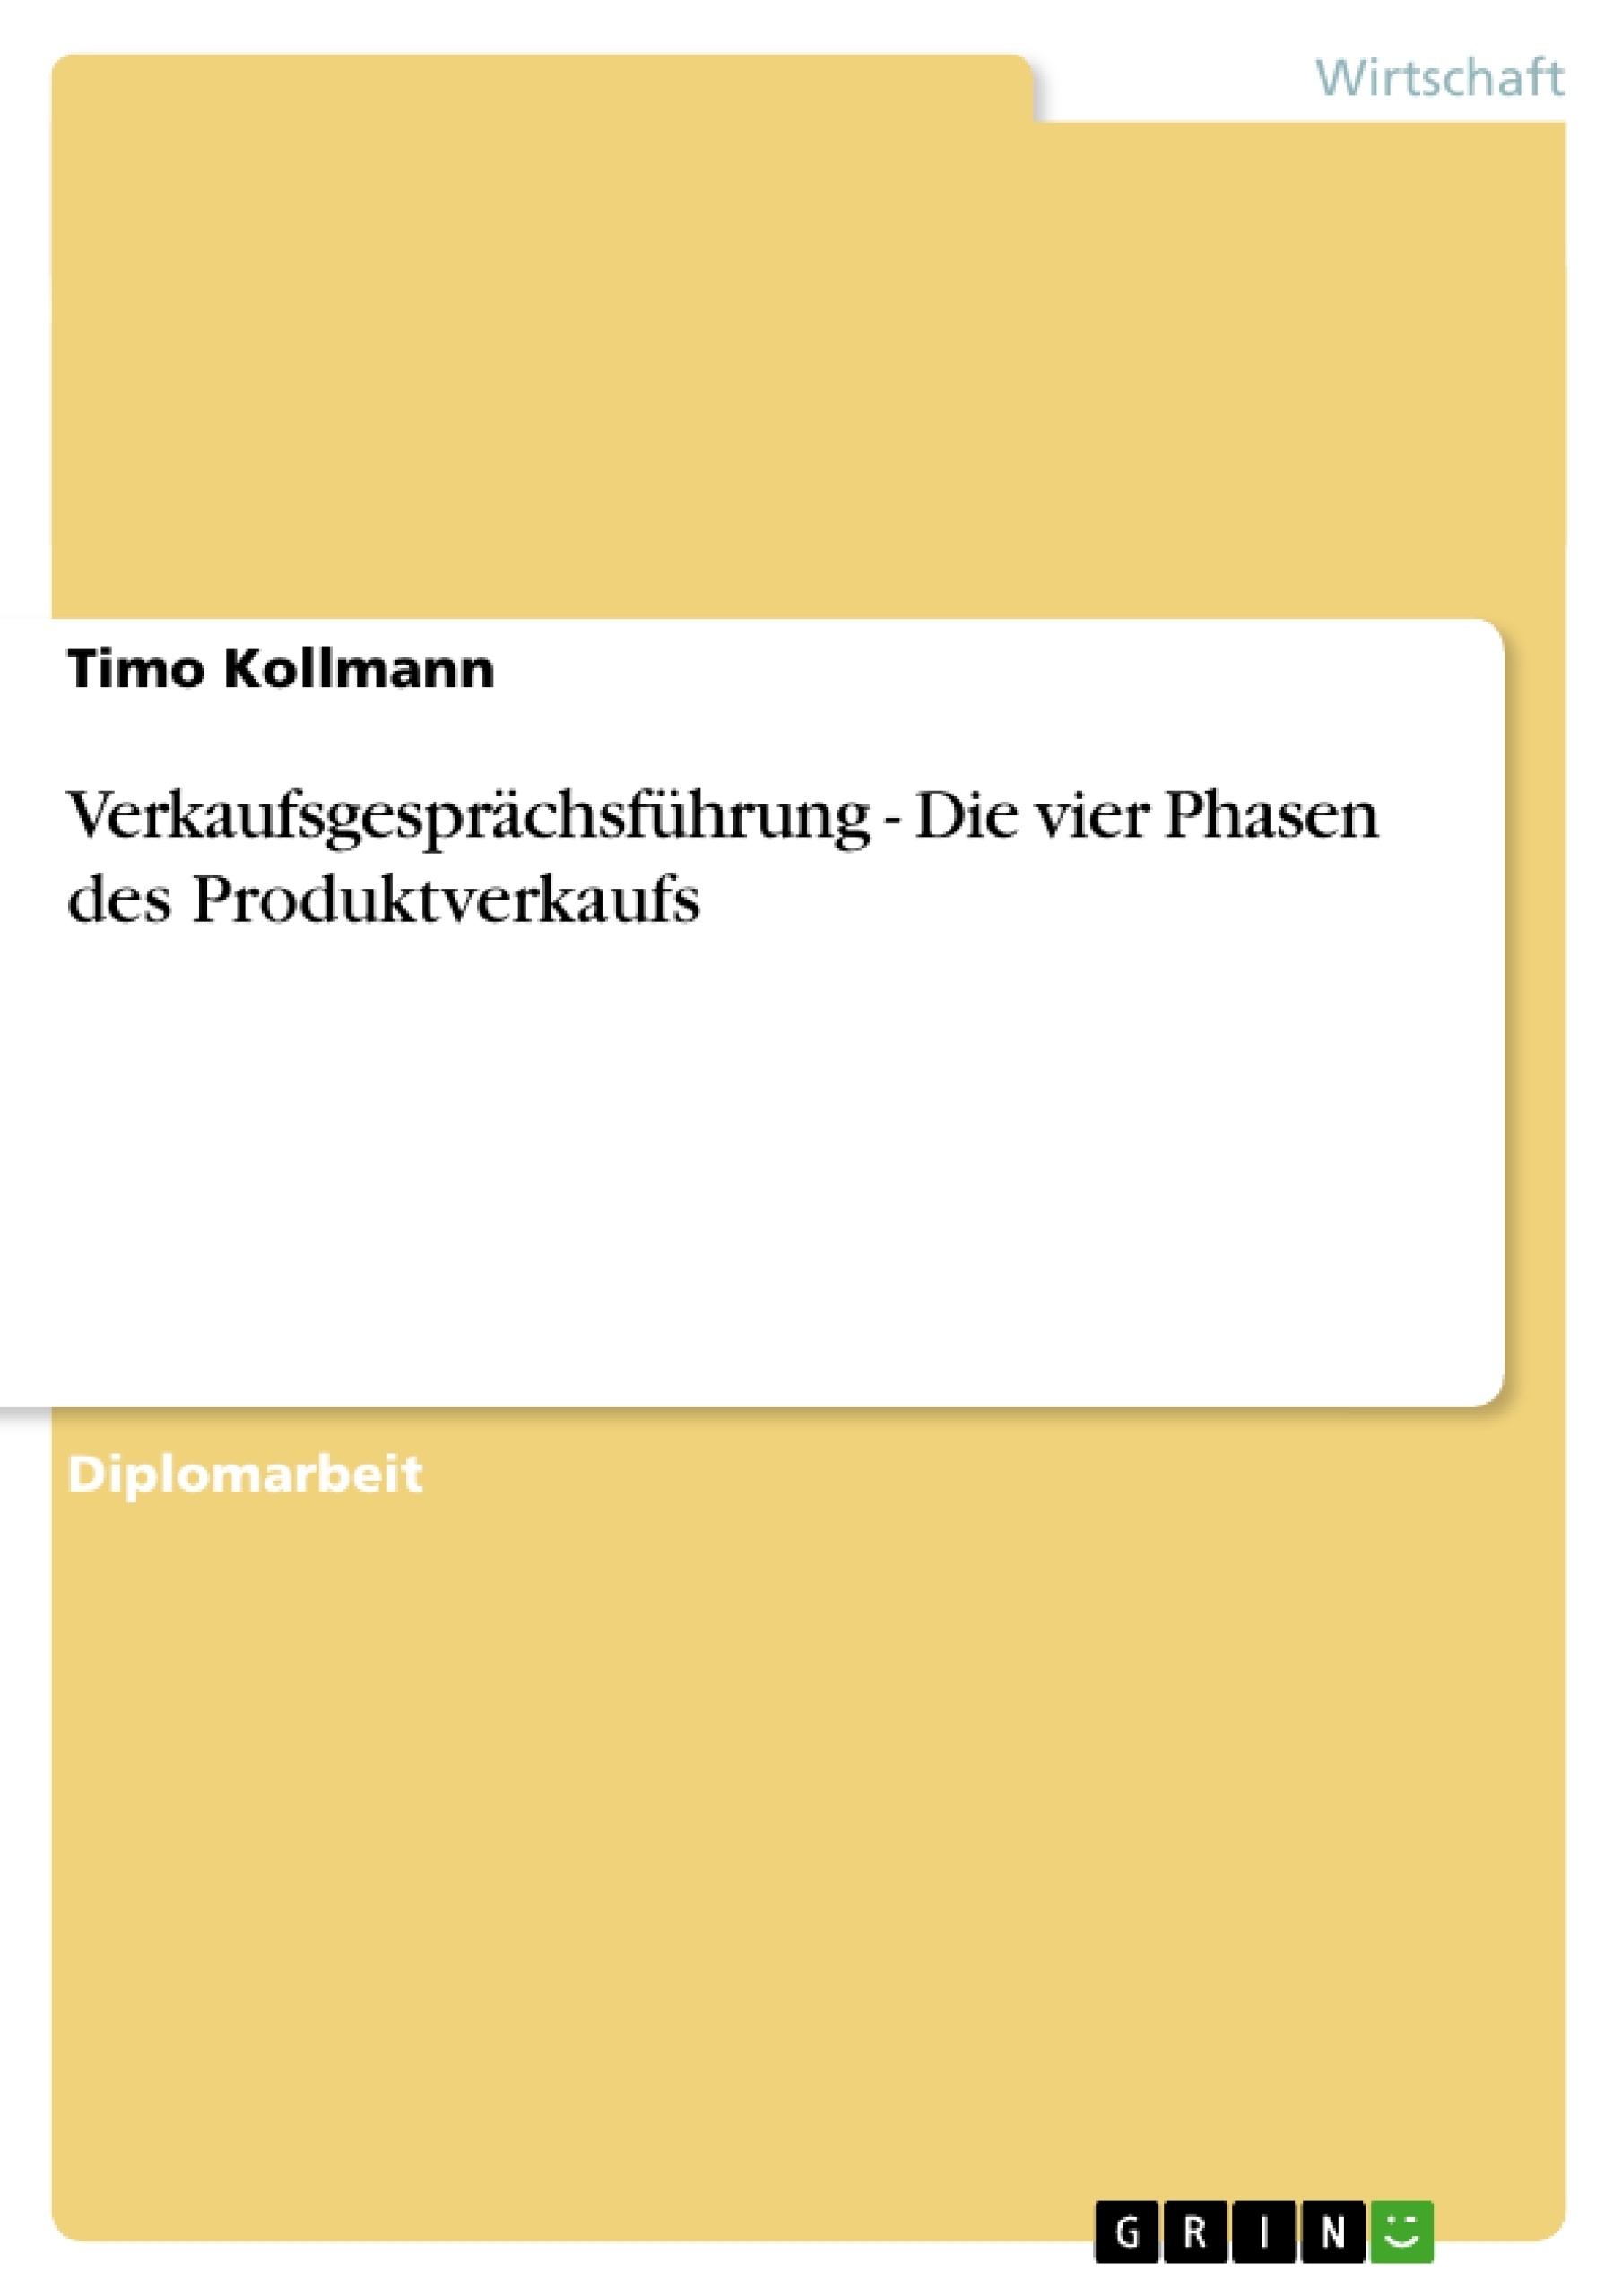 Titre: Verkaufsgesprächsführung - Die vier Phasen des Produktverkaufs